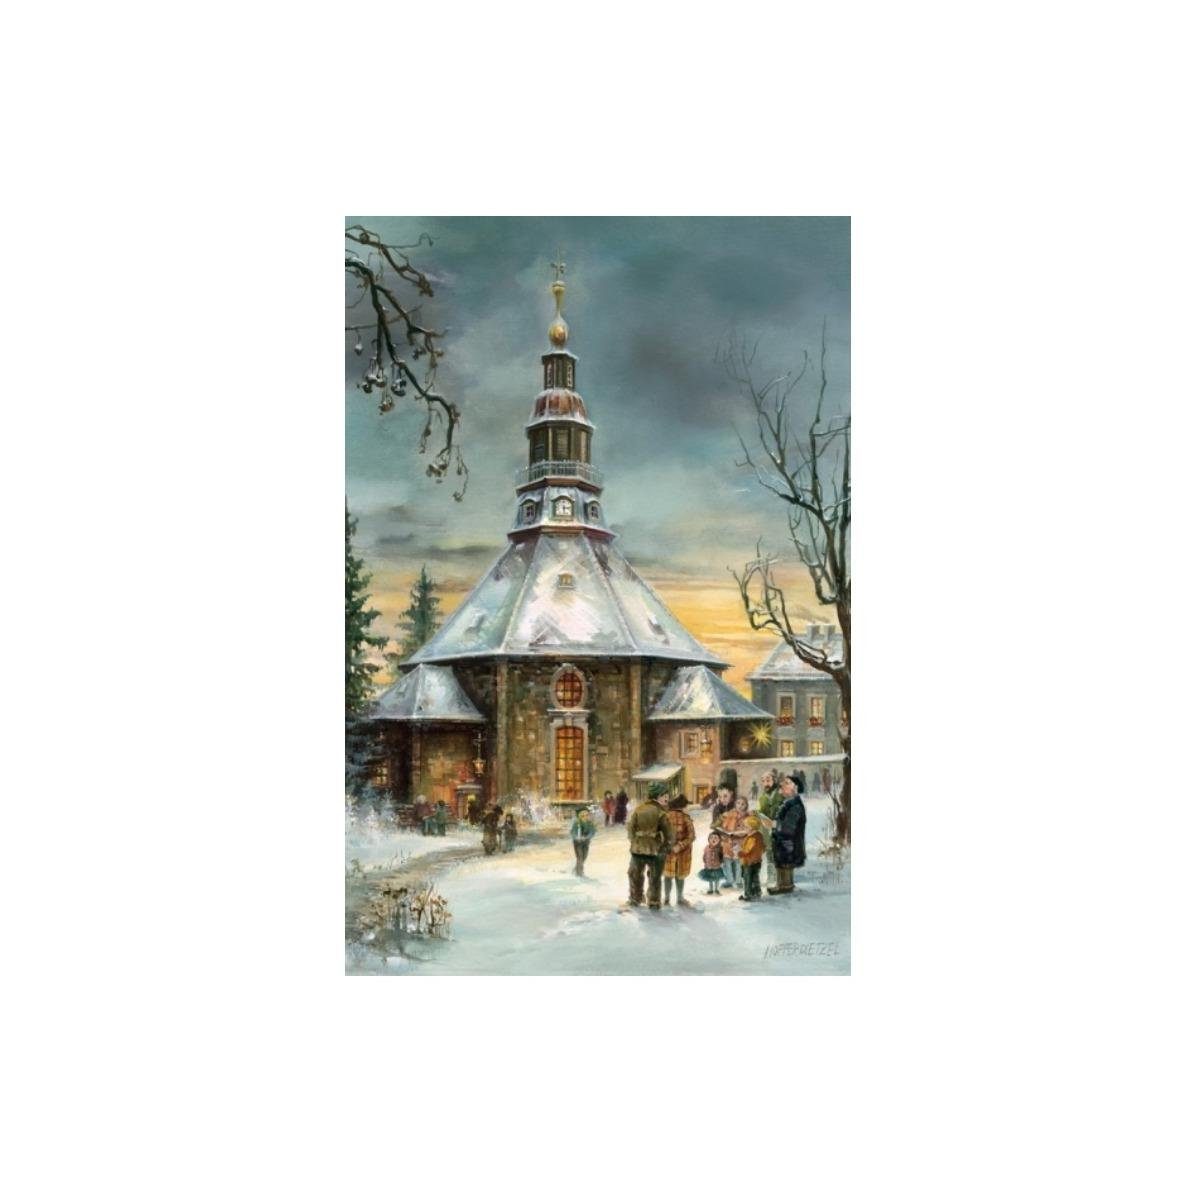 & Kirche" - Grußkarte "Seiffener Weihnachtspostkarte 2921 Tochter Olewinski